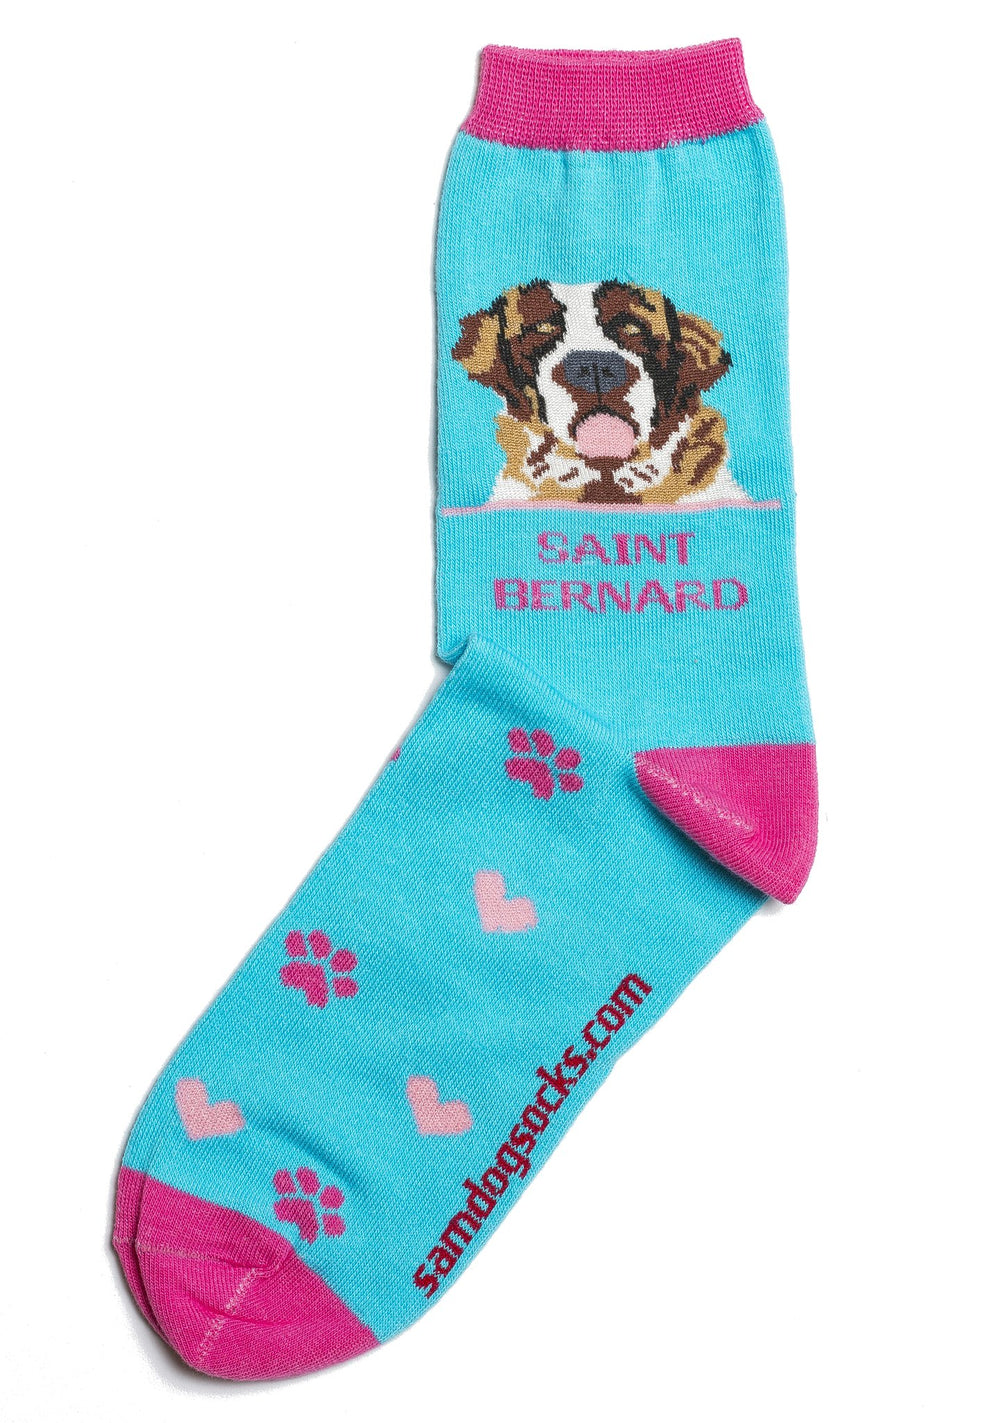 Saint Bernard socks for women - turquoise & hot pink